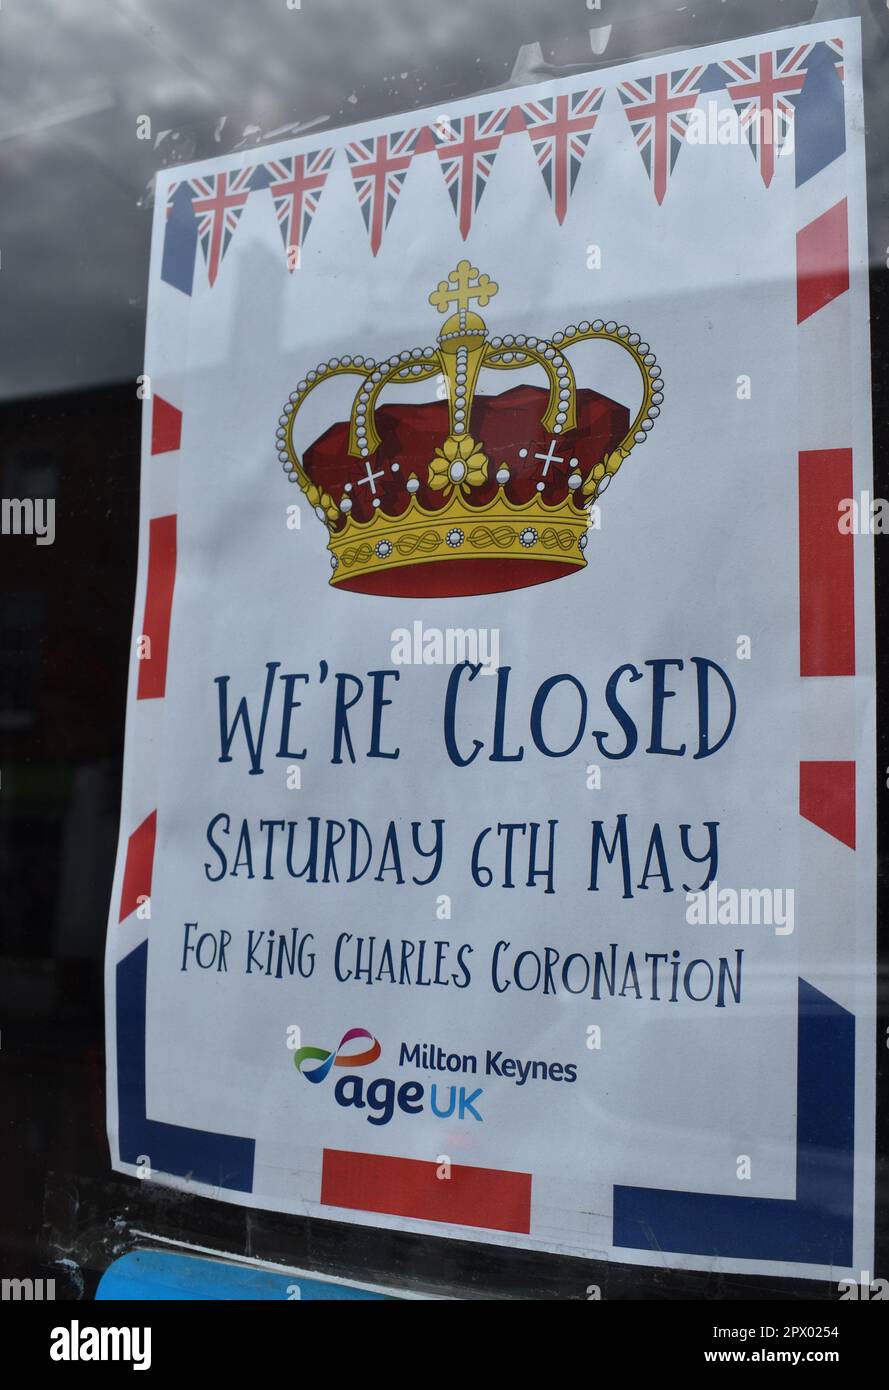 Hinweis im Age UK Charity Shop: 'Wir sind am Samstag, den 6. Mai wegen der Krönung von König Karl geschlossen'. Stockfoto